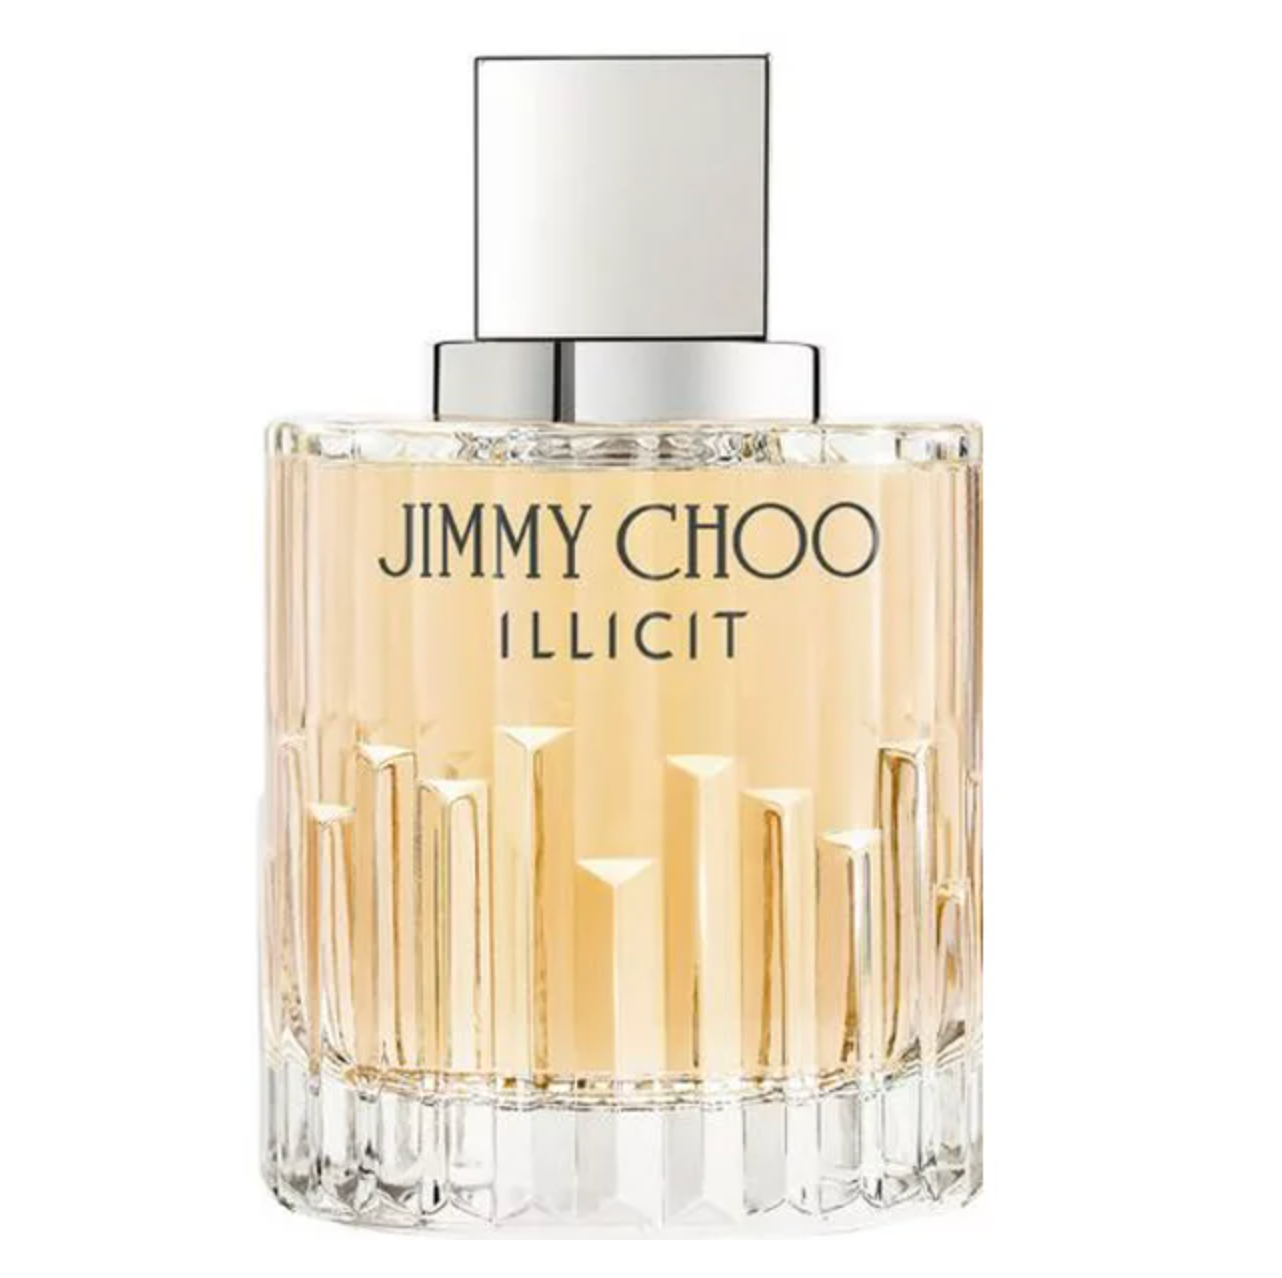 Jimmy Choo Illicit Eau de Parfum